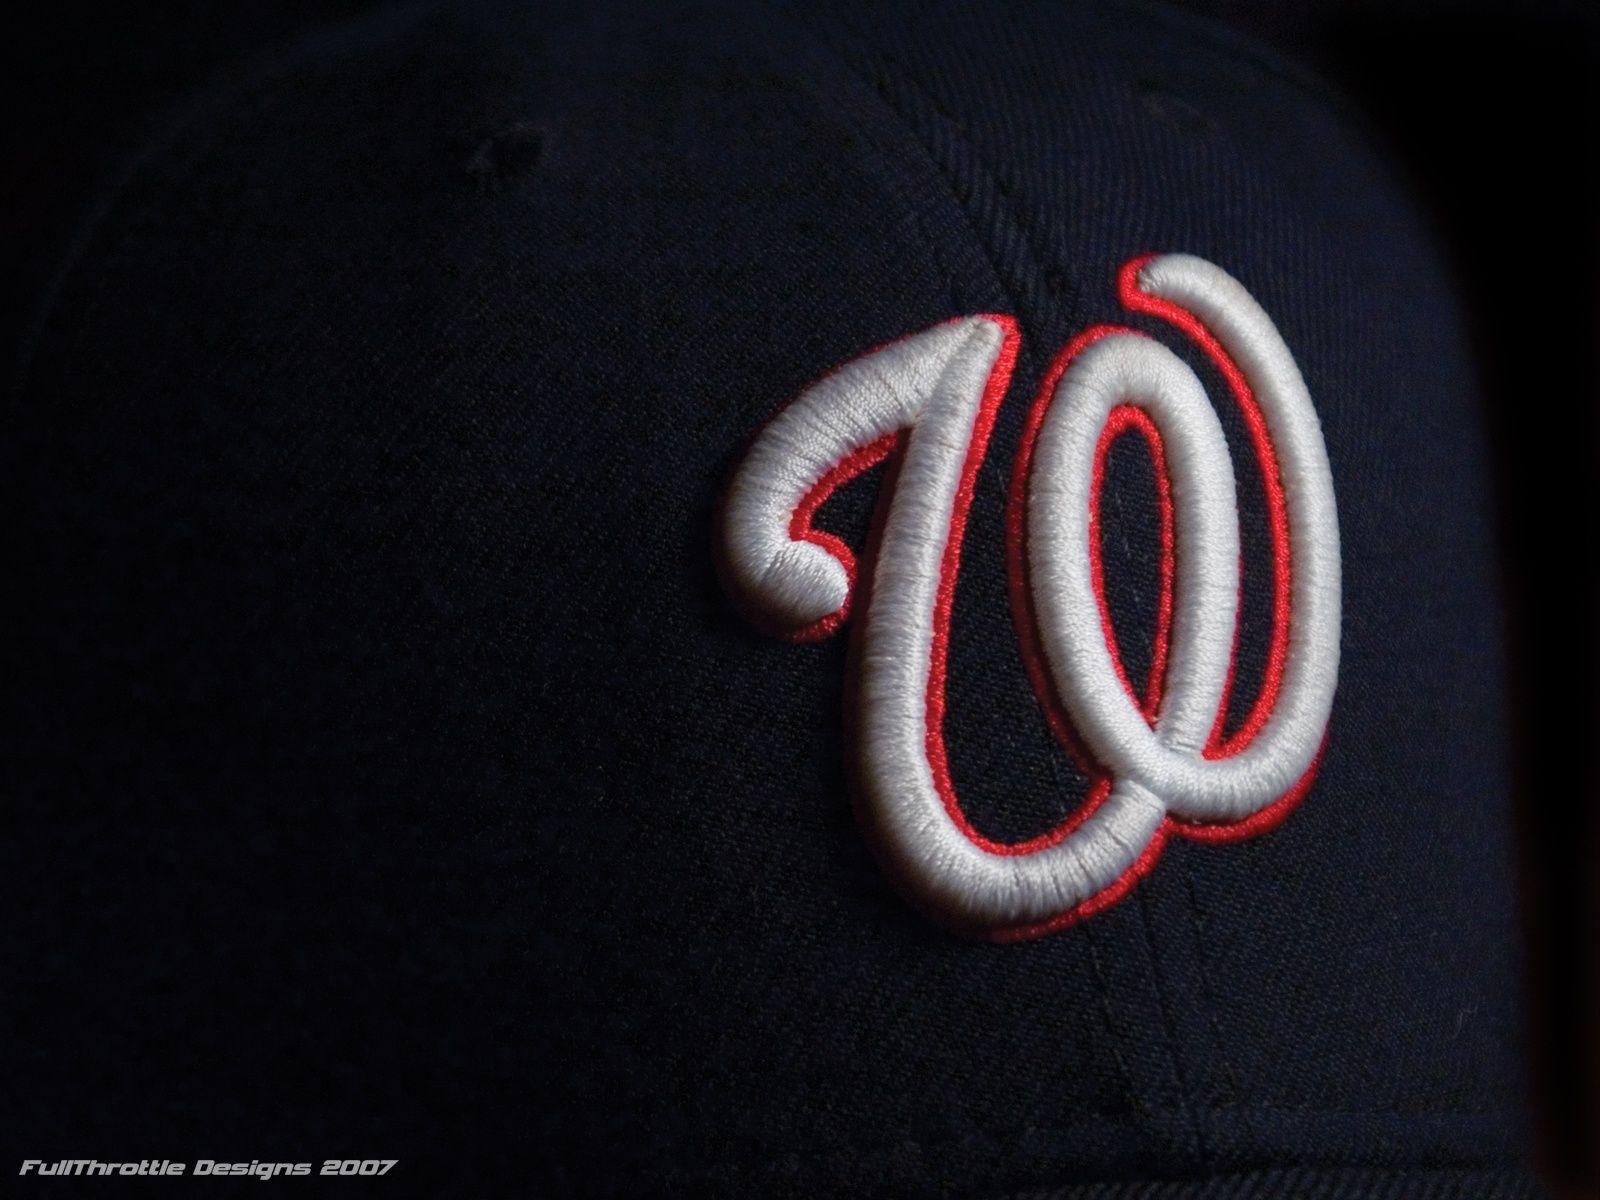 WASHINGTON NATIONALS mlb baseball (21) wallpaperx1200